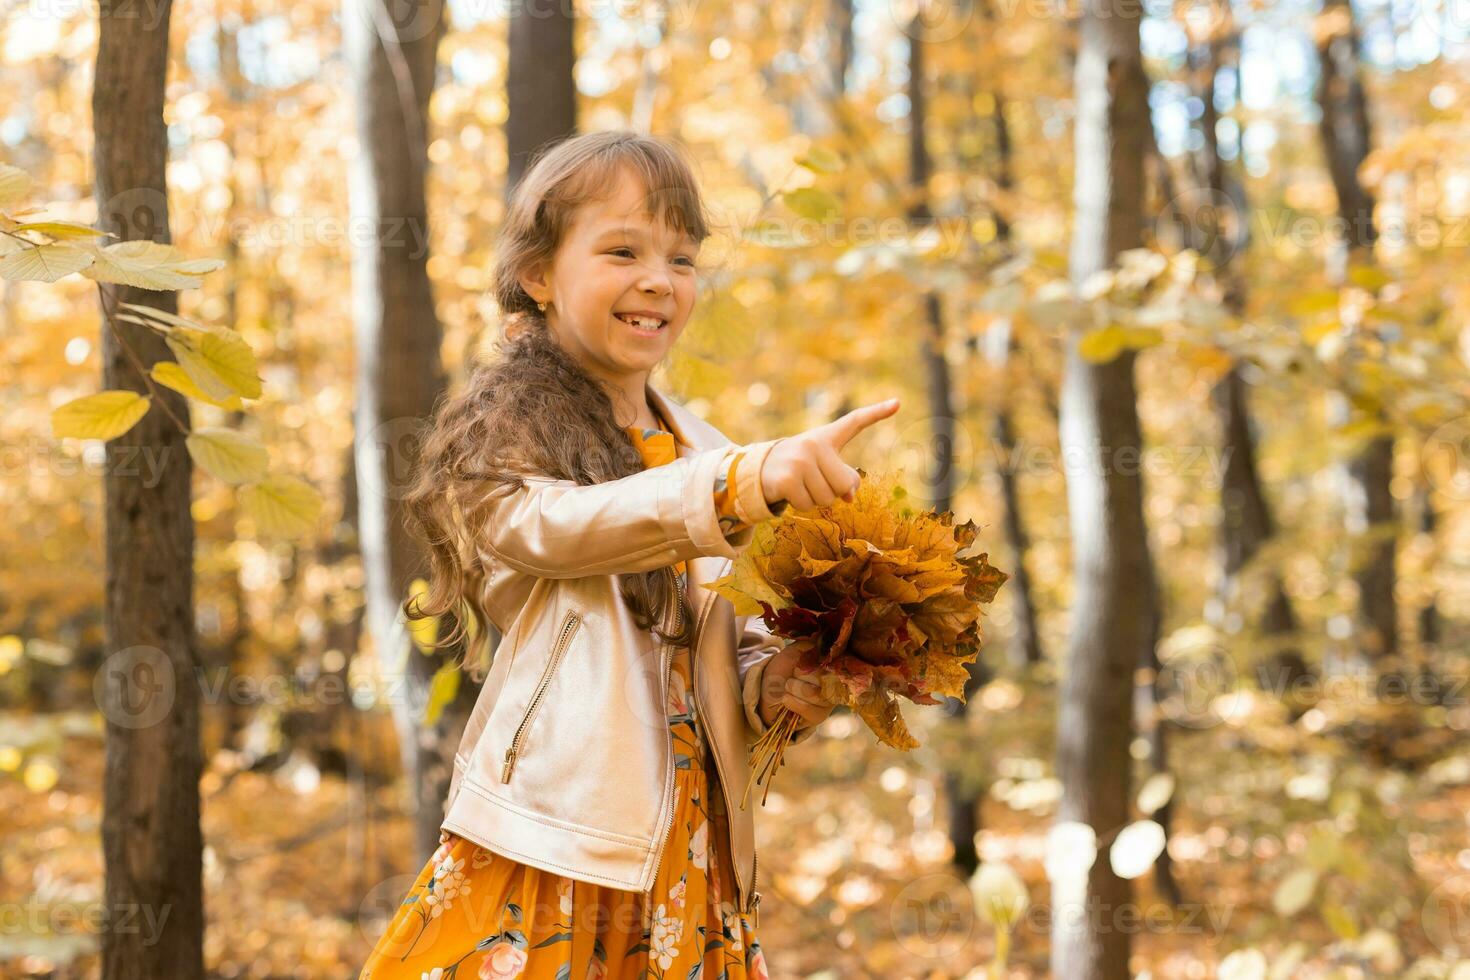 pequeño niño niña con otoño naranja hojas en un parque. estilo de vida, otoño temporada y niños concepto. foto